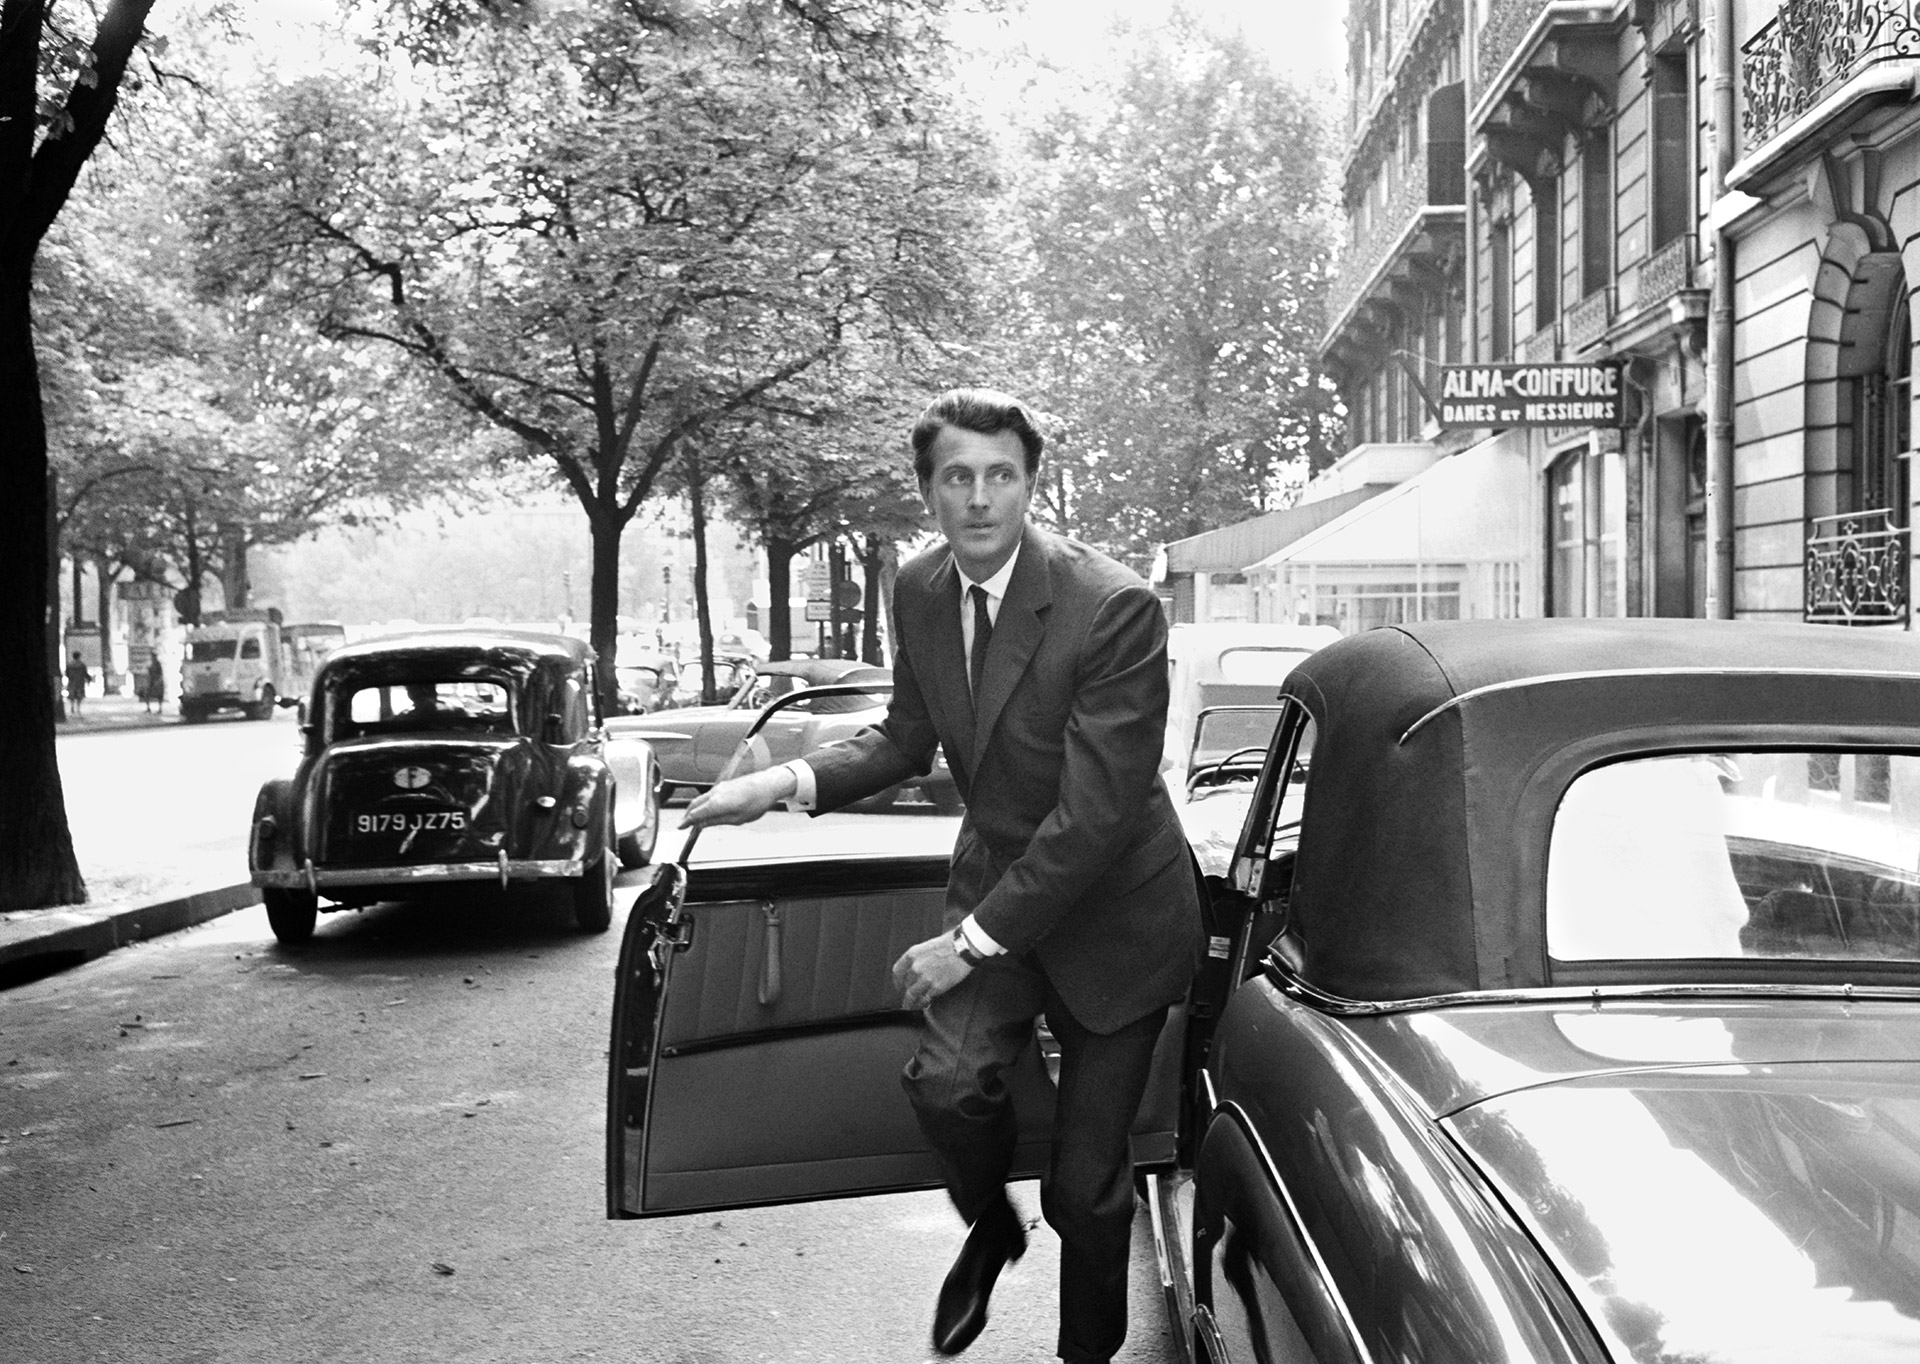 Givenchy. Paris, France, 1961 by Tony Vaccaro.